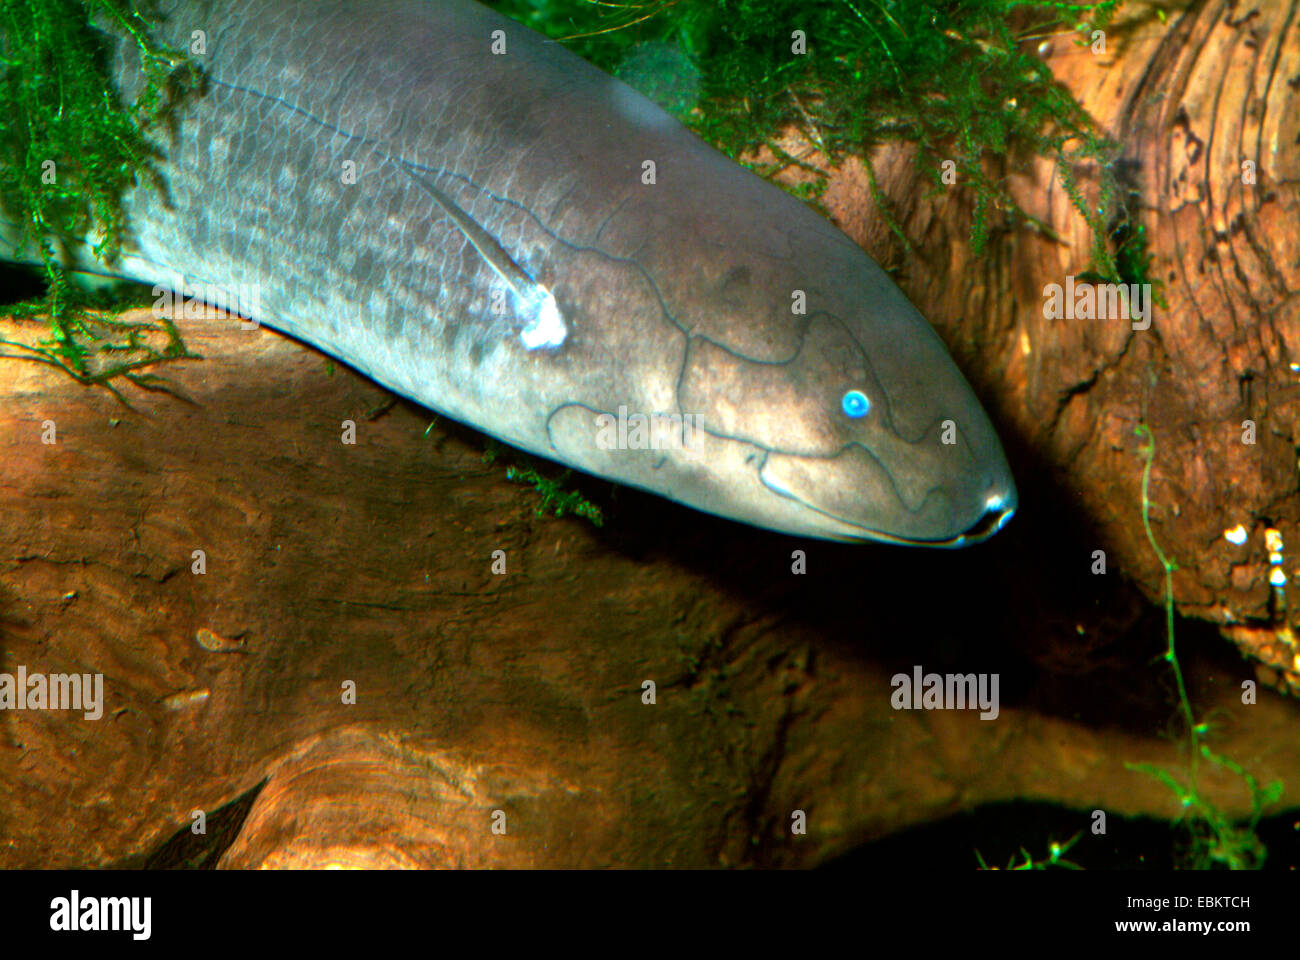 Gefleckte afrikanische Lungenfisch, Doloi Lungenfisch (Protopterus Dolloi), halblängen Porträt Stockfoto